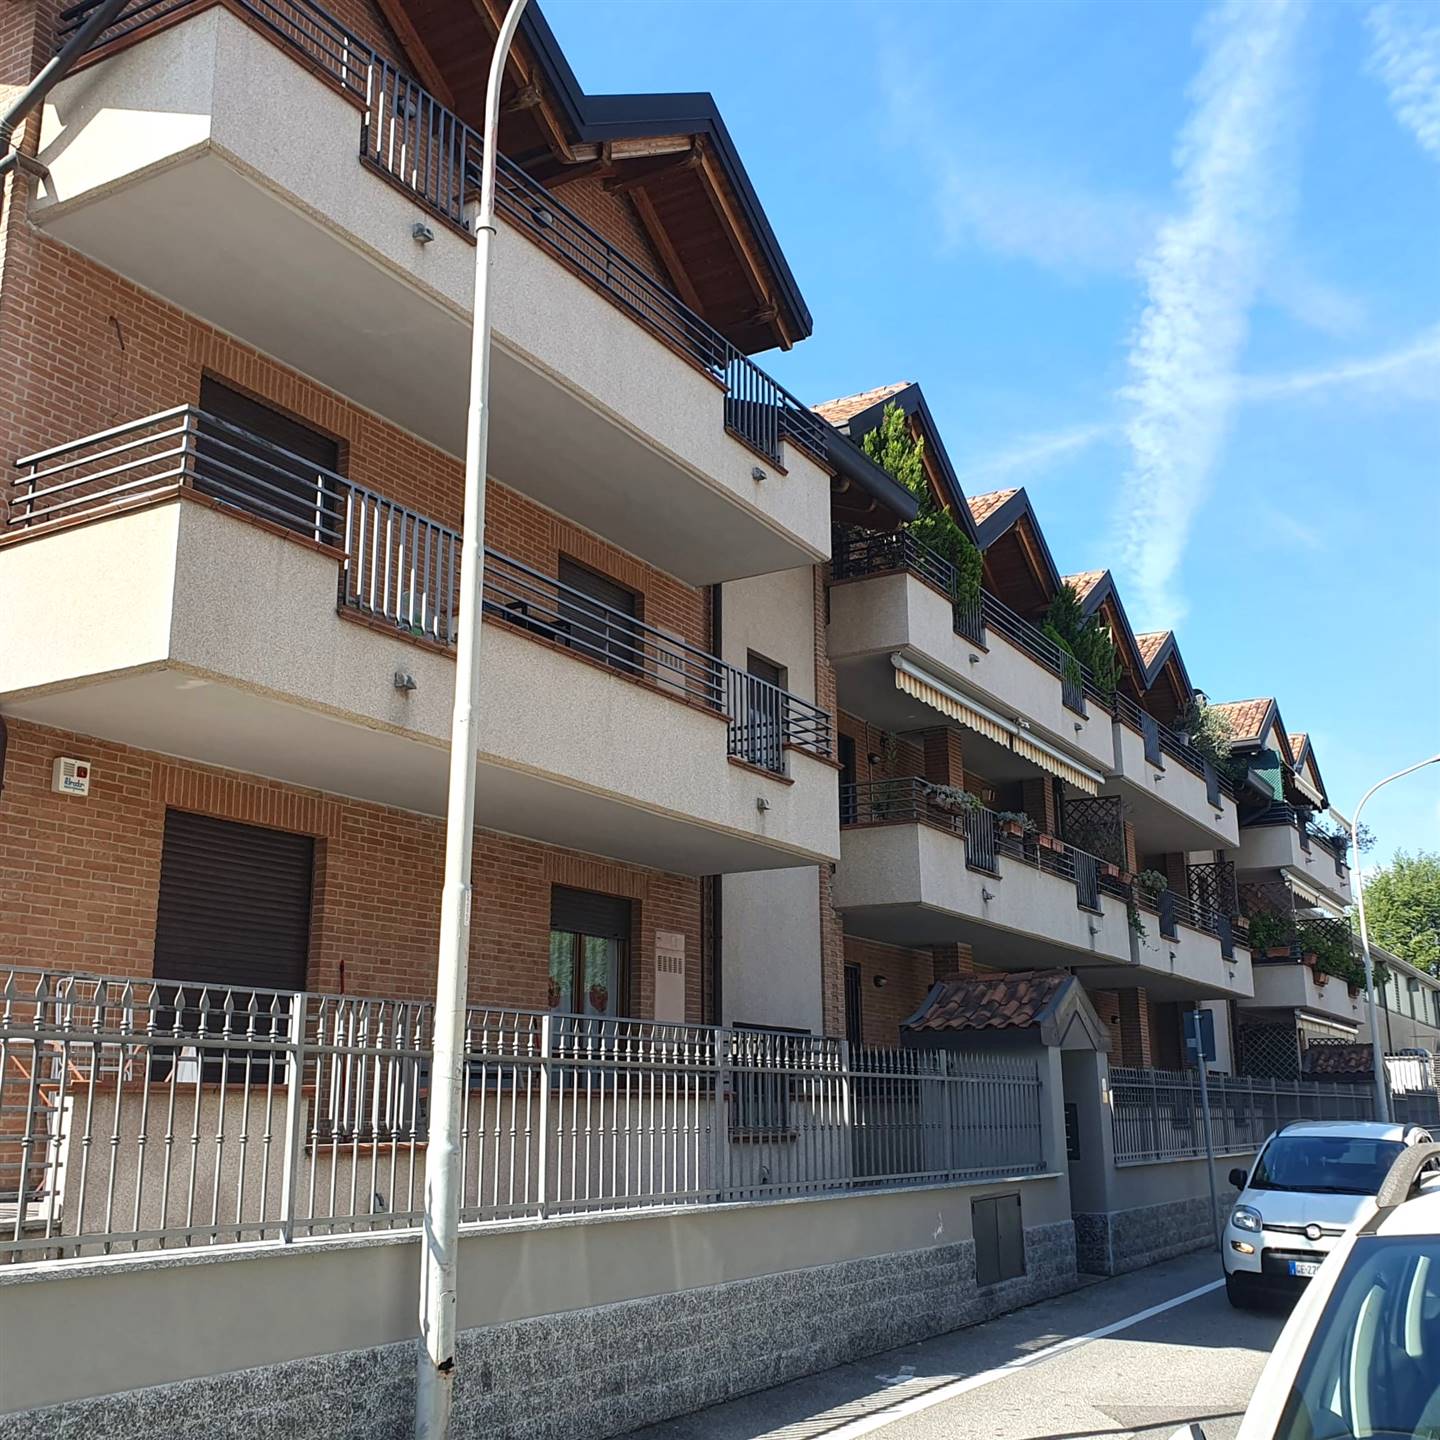 Rif 2/563 L'Abbruzzi Gruppo Immobiliare propone in Cinisello Balsamo, vicino alle principali arterie stradali, in mini palazzina di recente 